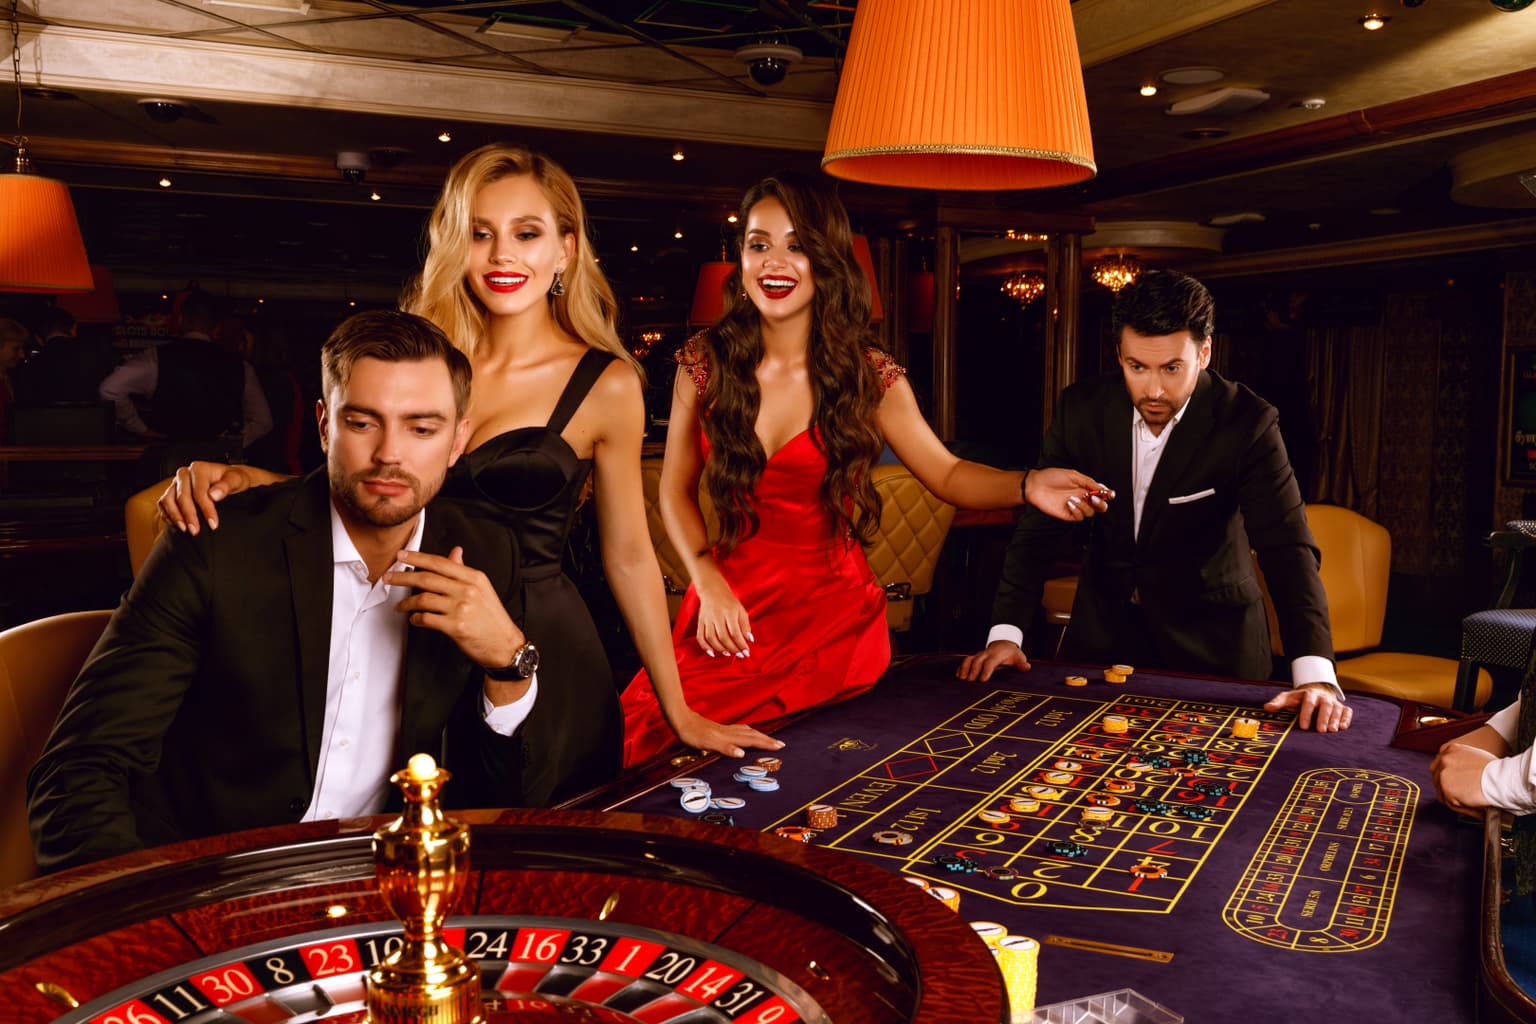 Онлайн казино: слоты, игровые автоматы, рулетка, покер, азартные игры, как играть и выигрывать, стоит ли рисковать играть на все деньги?